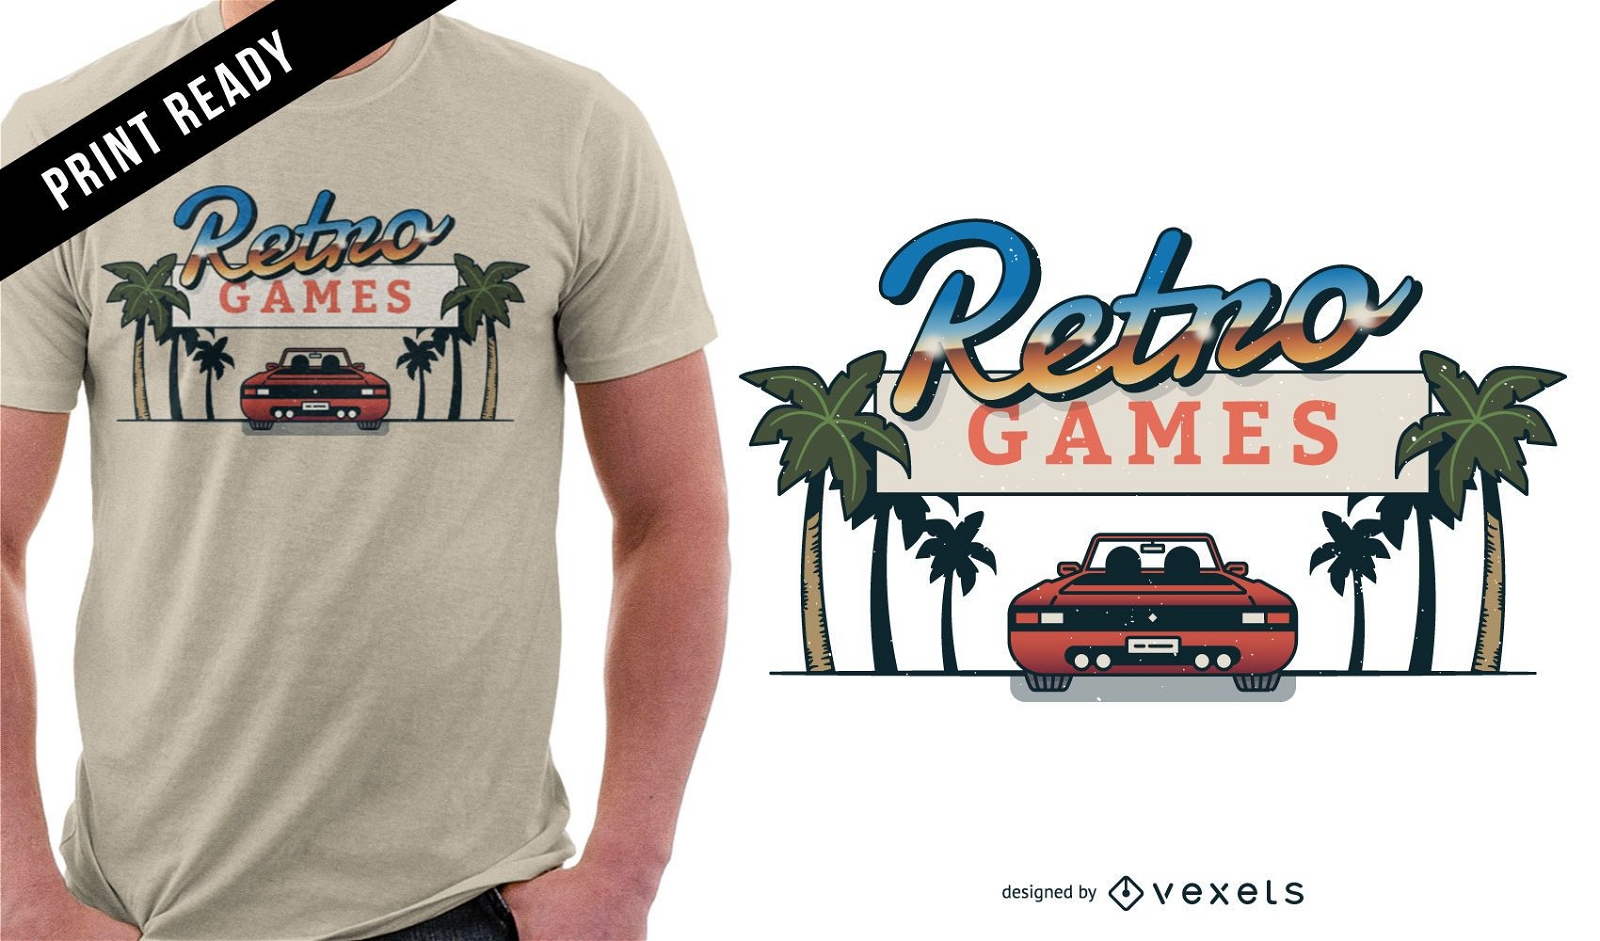 Retro games t-shirt design